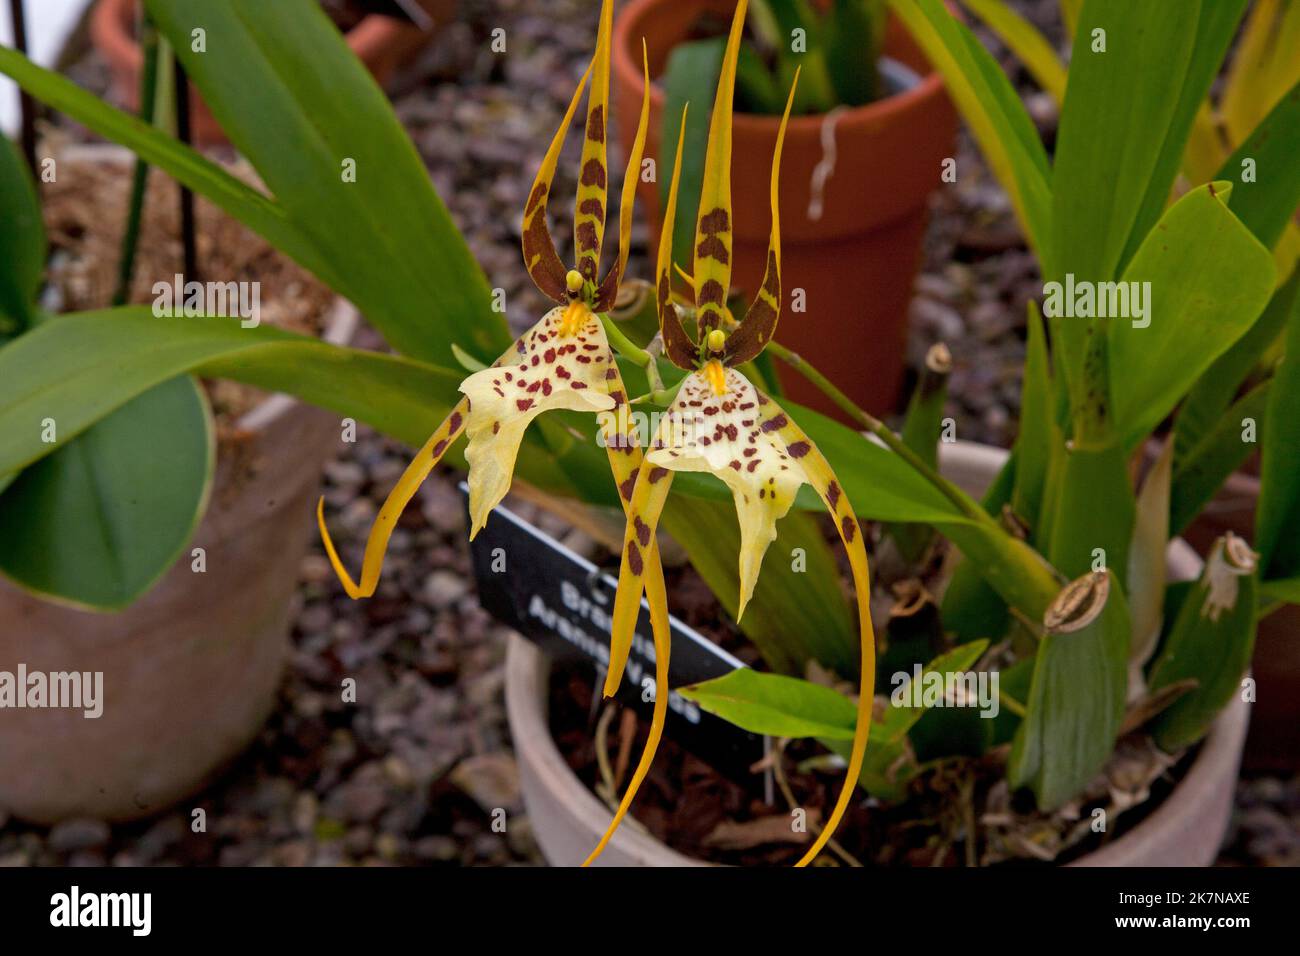 Orchidée de Brassea a repéré jaune exotique plante à fleurs avec des taches rouges dans une serre Banque D'Images